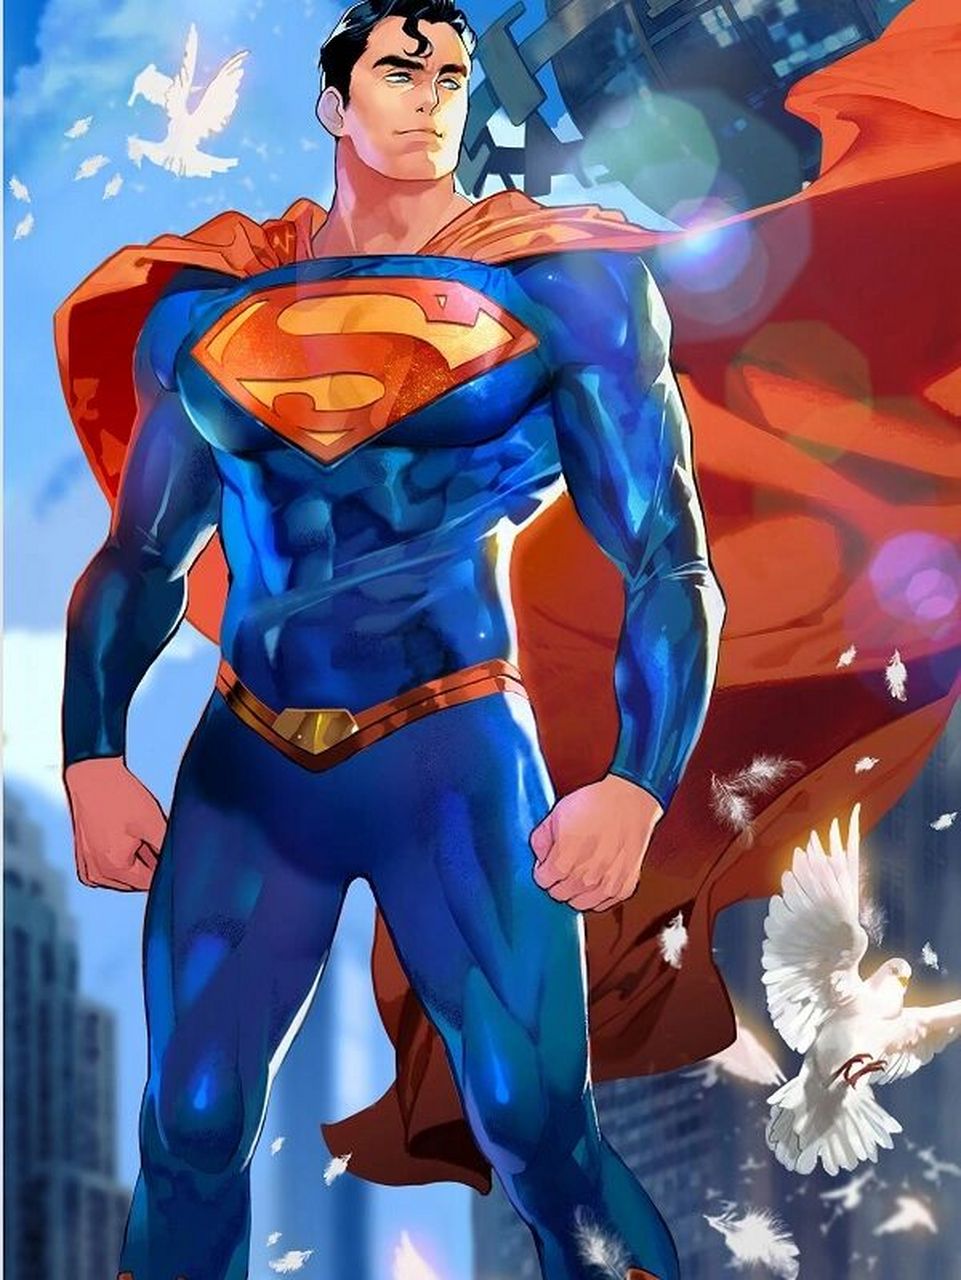 【关注我了解更多】dc——超人 超人(superman)是美国dc漫画旗下的